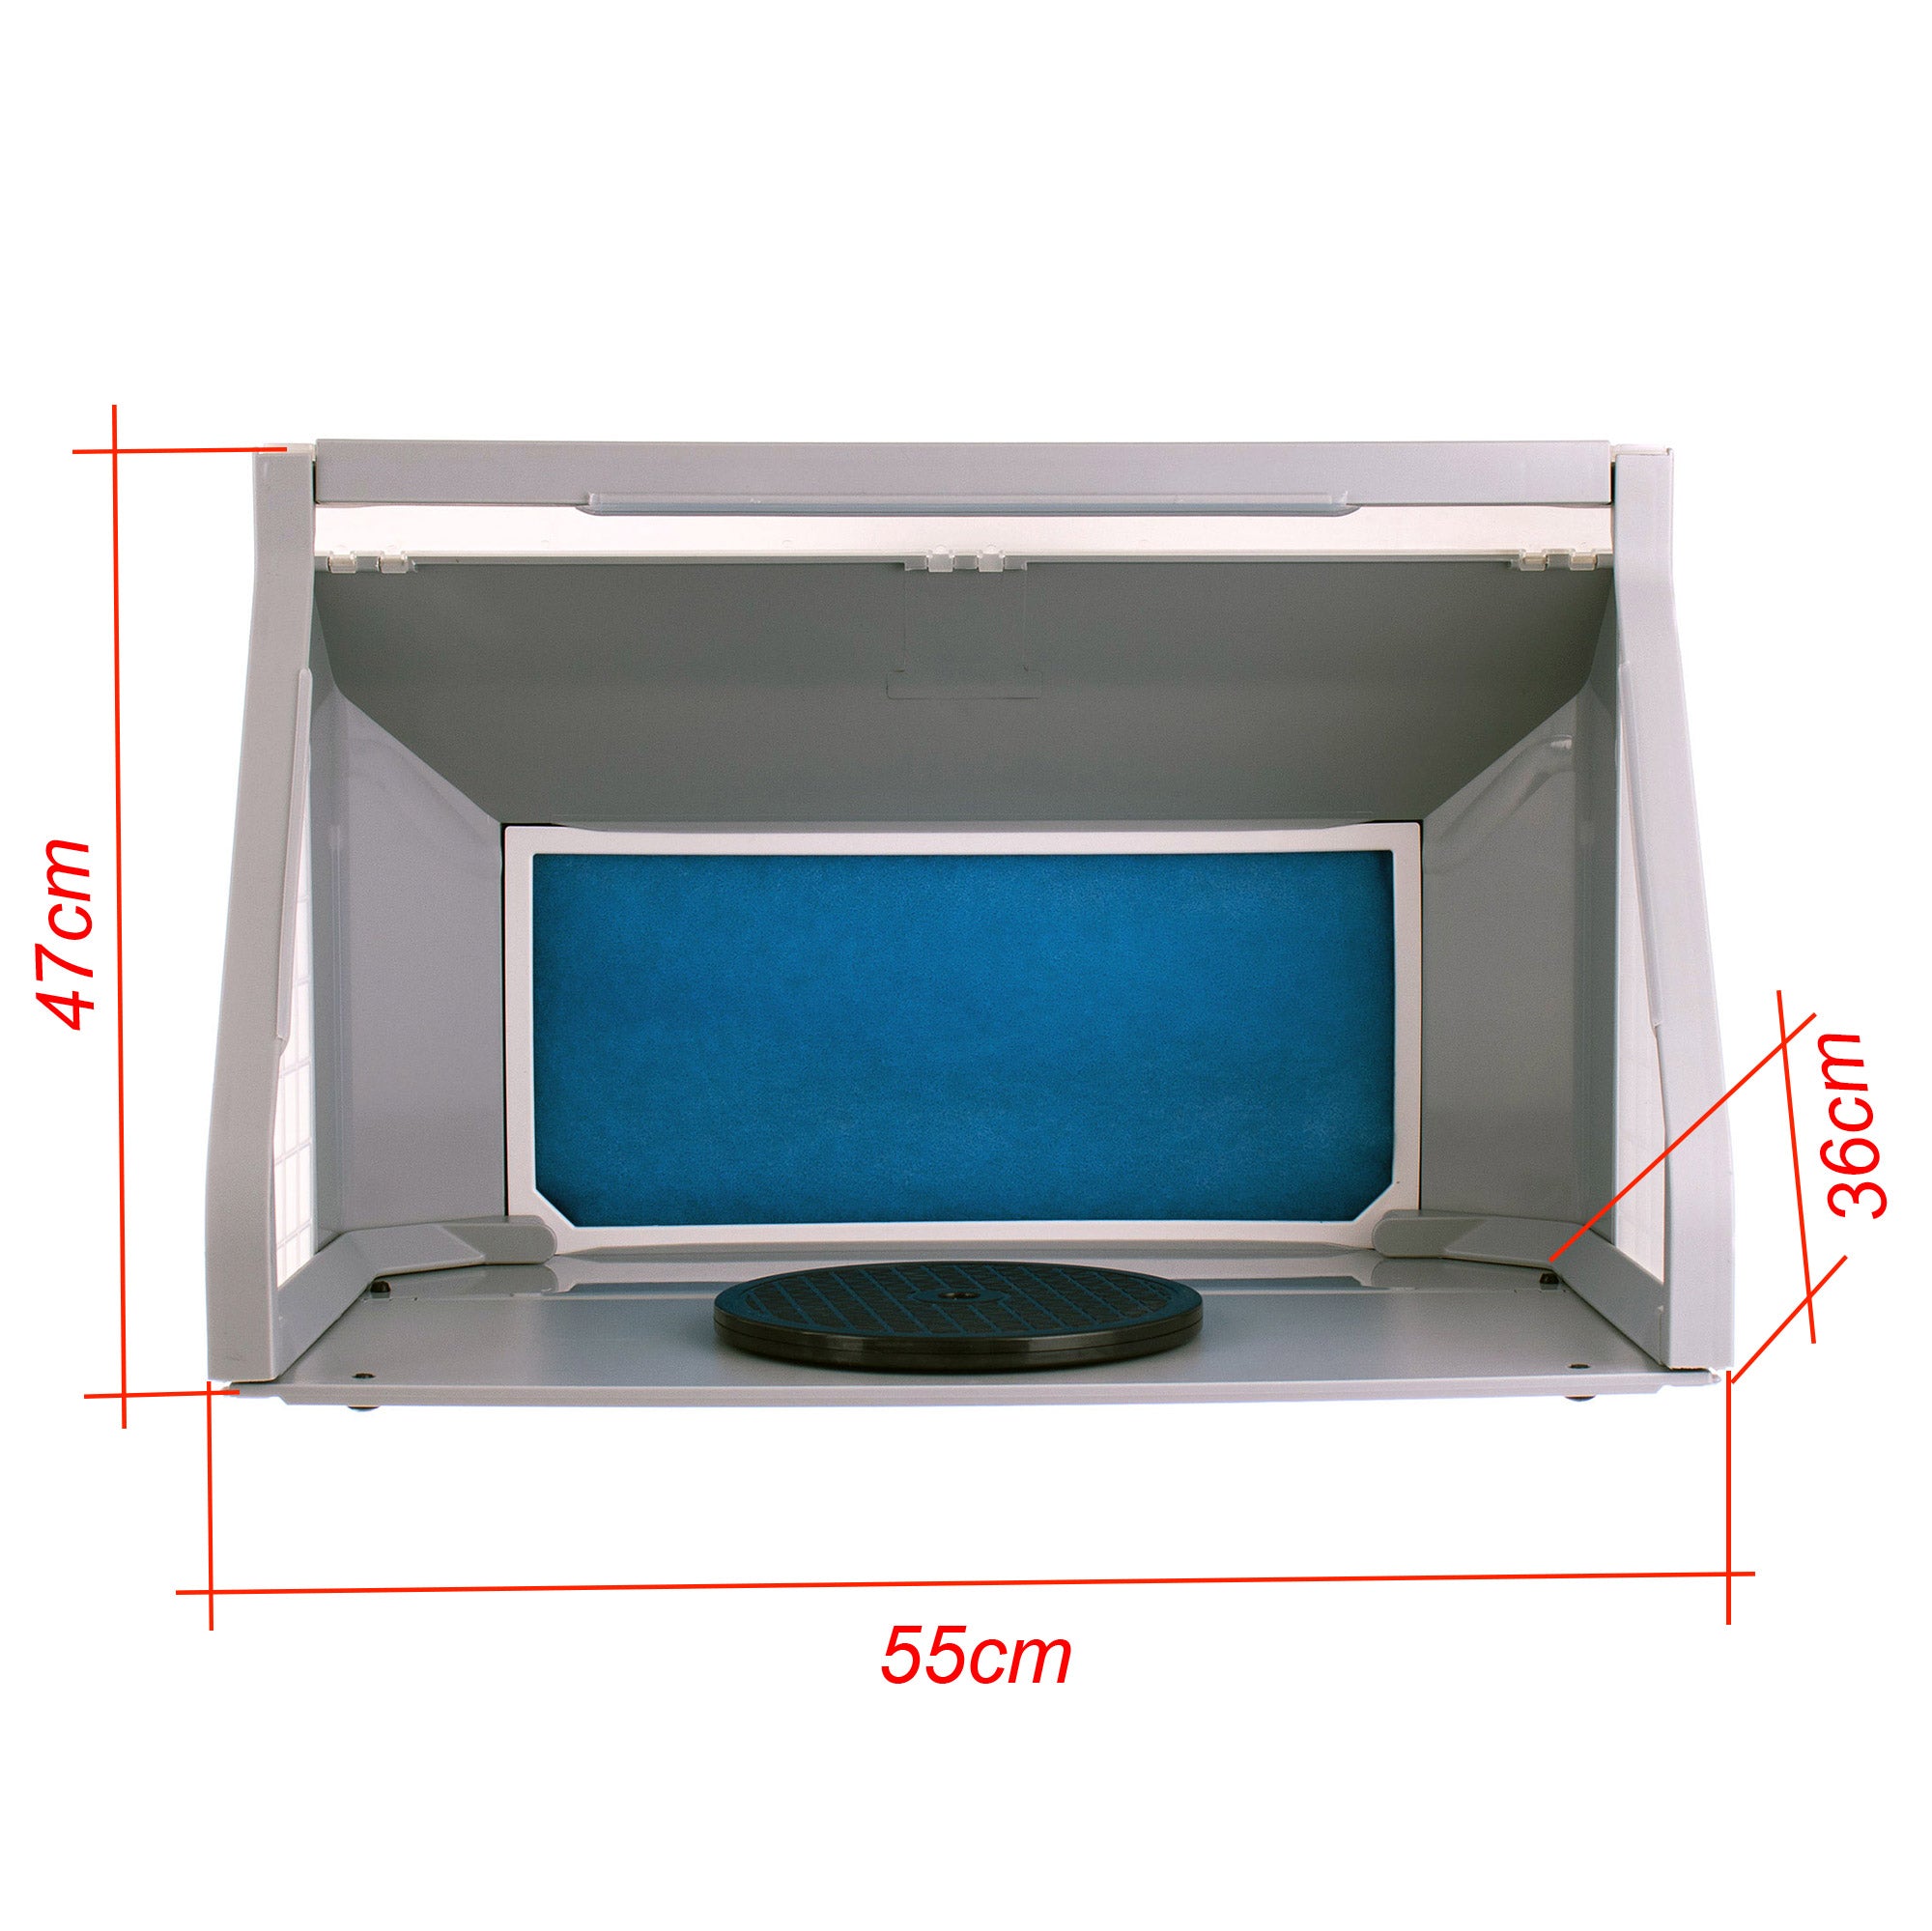 Modelovací kabina - Stříkací box HS-E550BLK - s nastavitelným osvětlením LED, s dvojitým ventilátorem a rotačním stojanem - pro airbrush modeláře